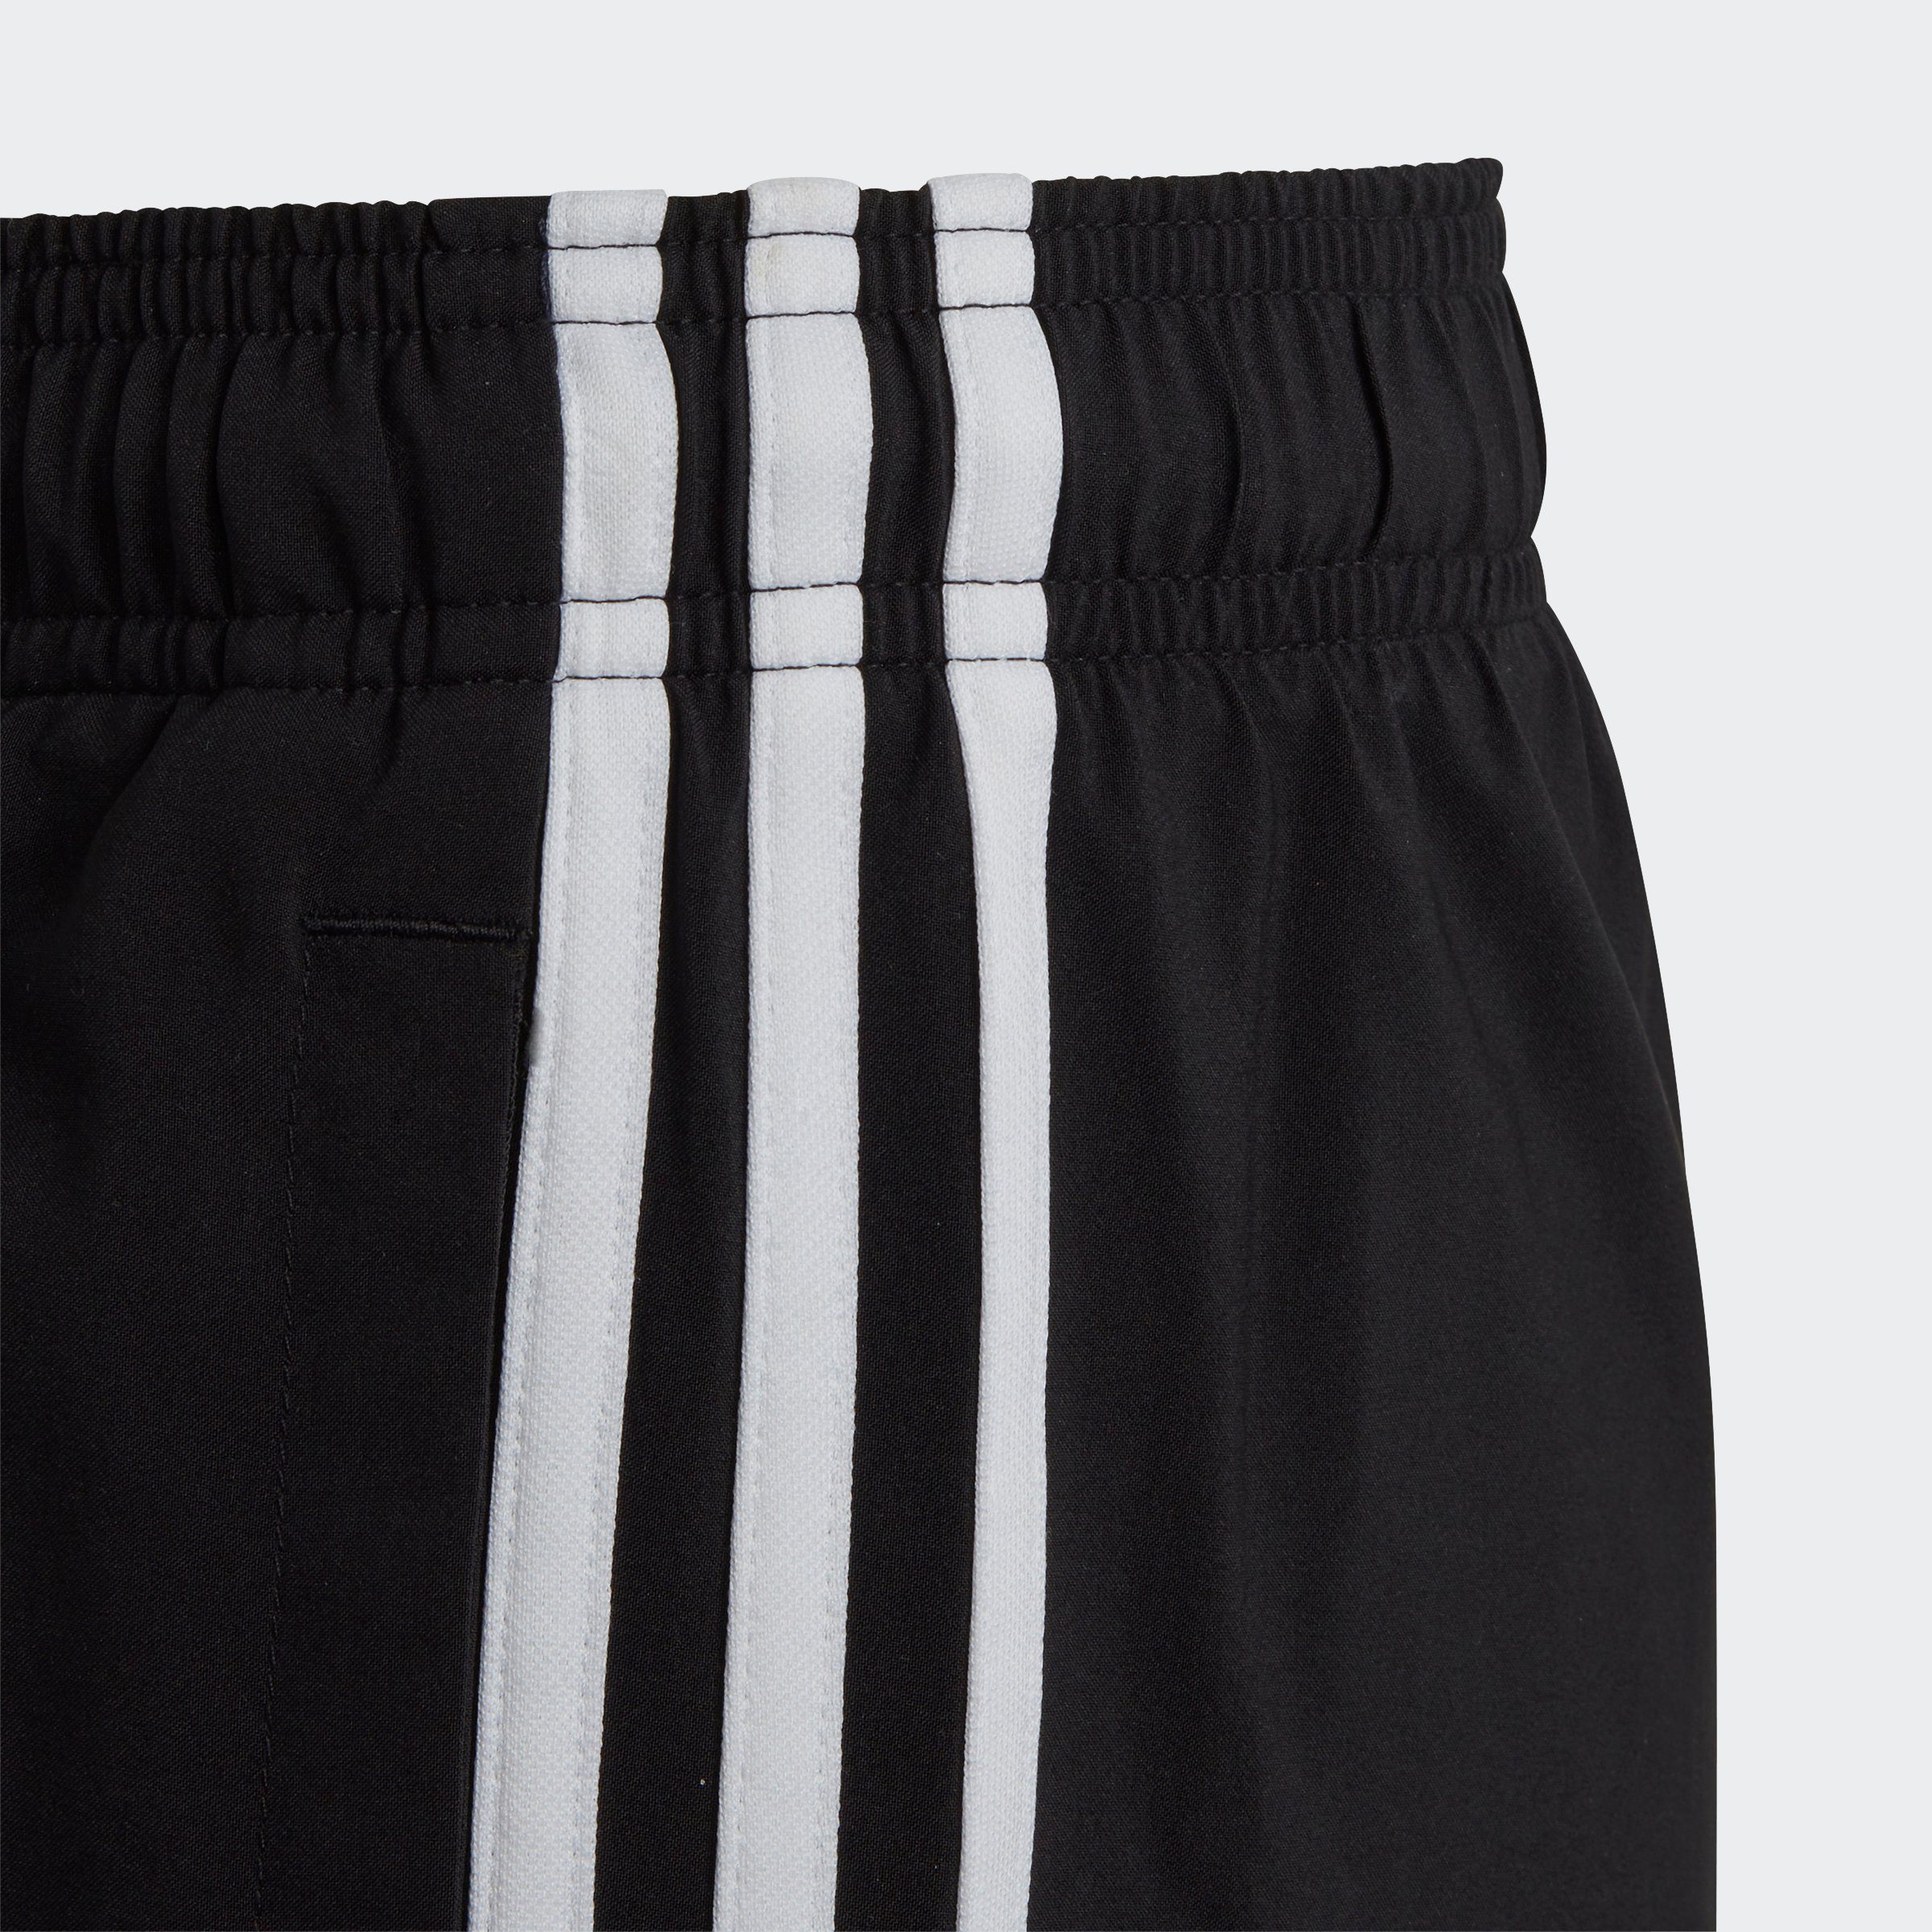 WOVEN ESSENTIALS / adidas Shorts 3-STREIFEN Black (1-tlg) Sportswear White